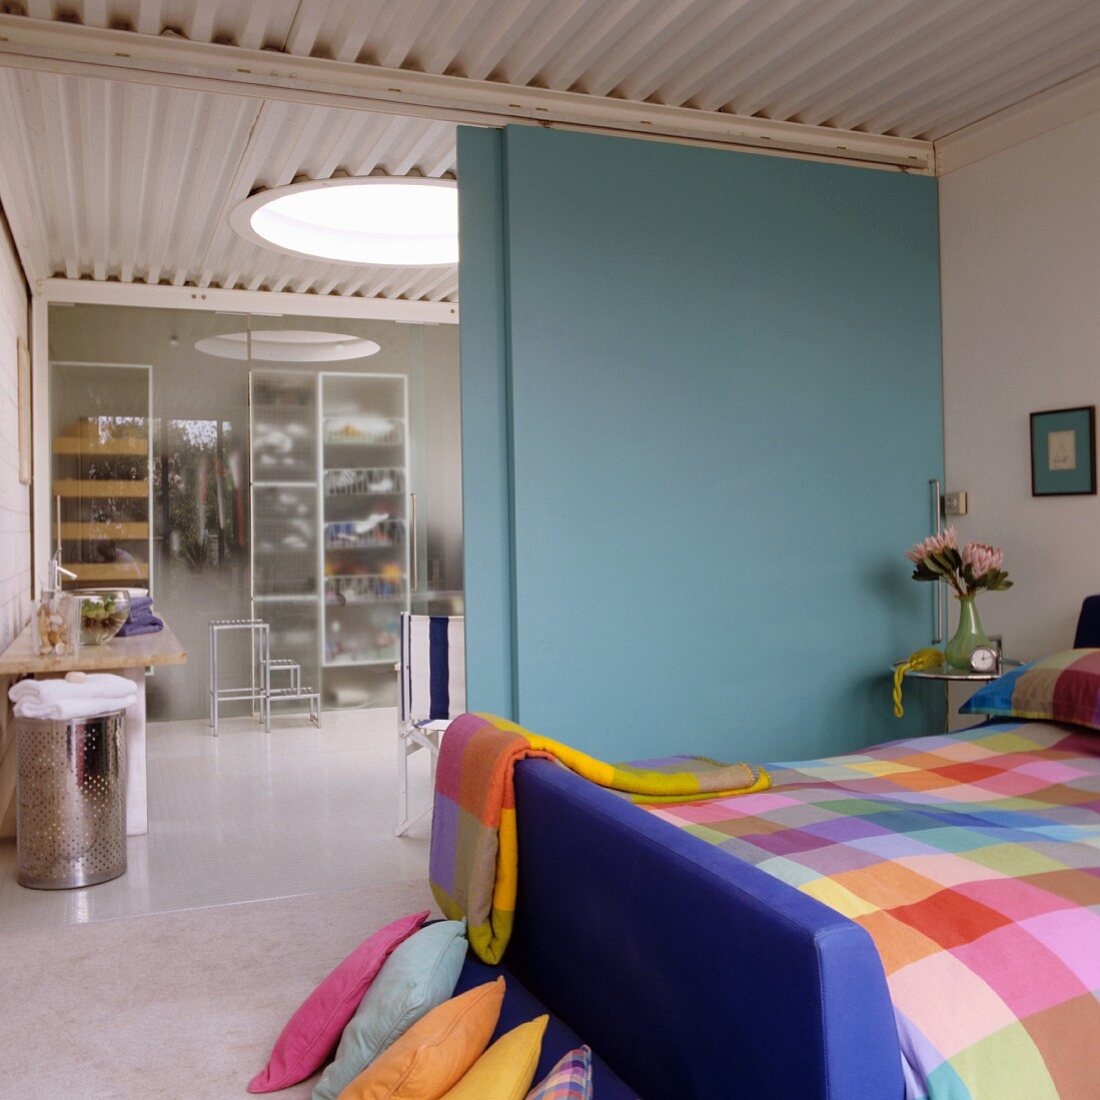 Farbenfroh karierte Bettwäsche im Schlafzimmer und Blick durch eine hellblaue Schiebetür in das Bad Ensuite